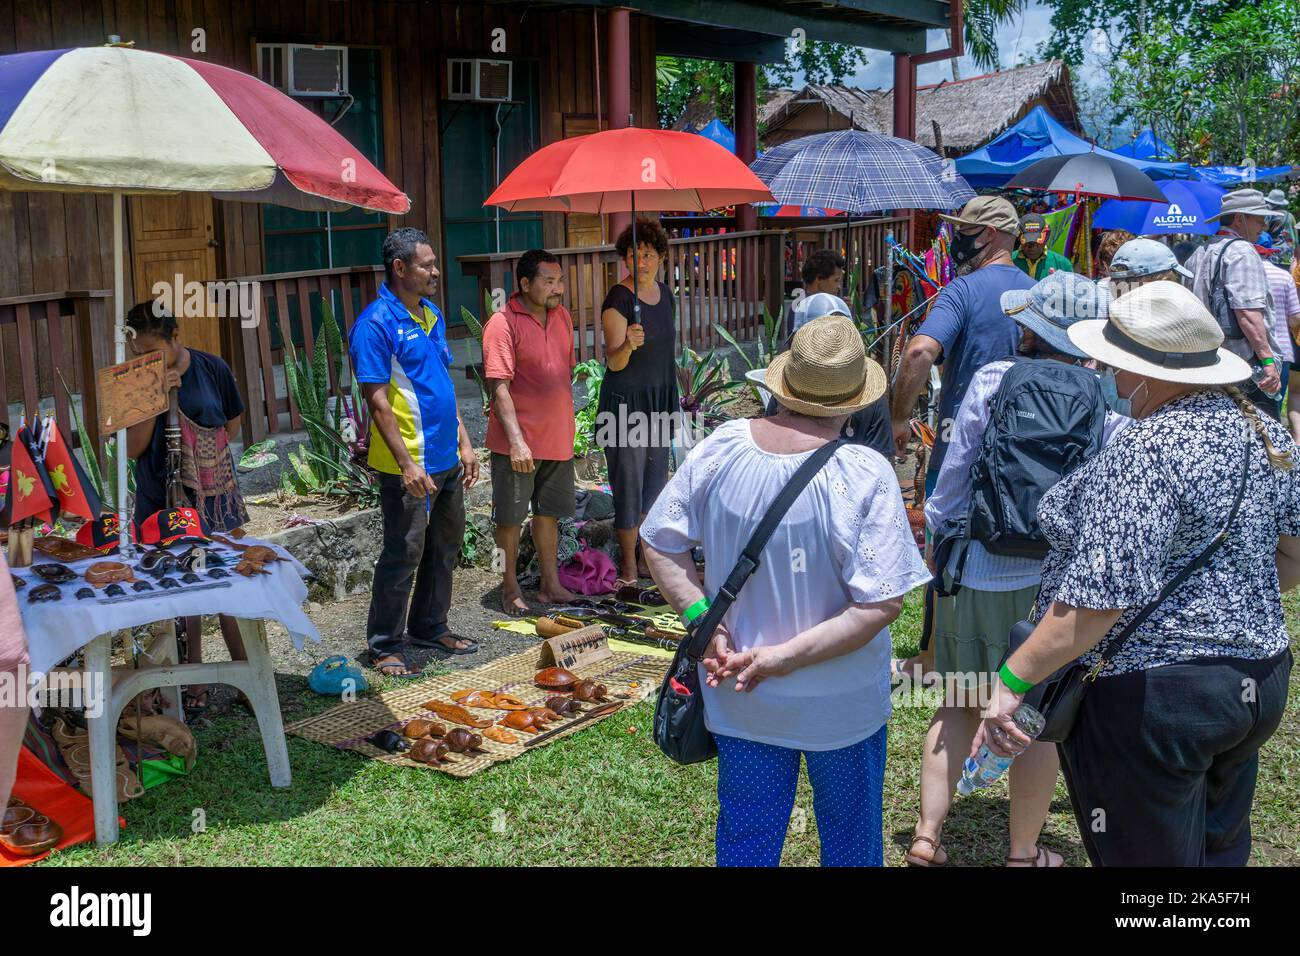 Les détenteurs de stalle vendent et présentent divers métiers artisanaux Alotau Cultural Festival, Alotau, province de Milne Bay, Papouasie-Nouvelle-Guinée Banque D'Images